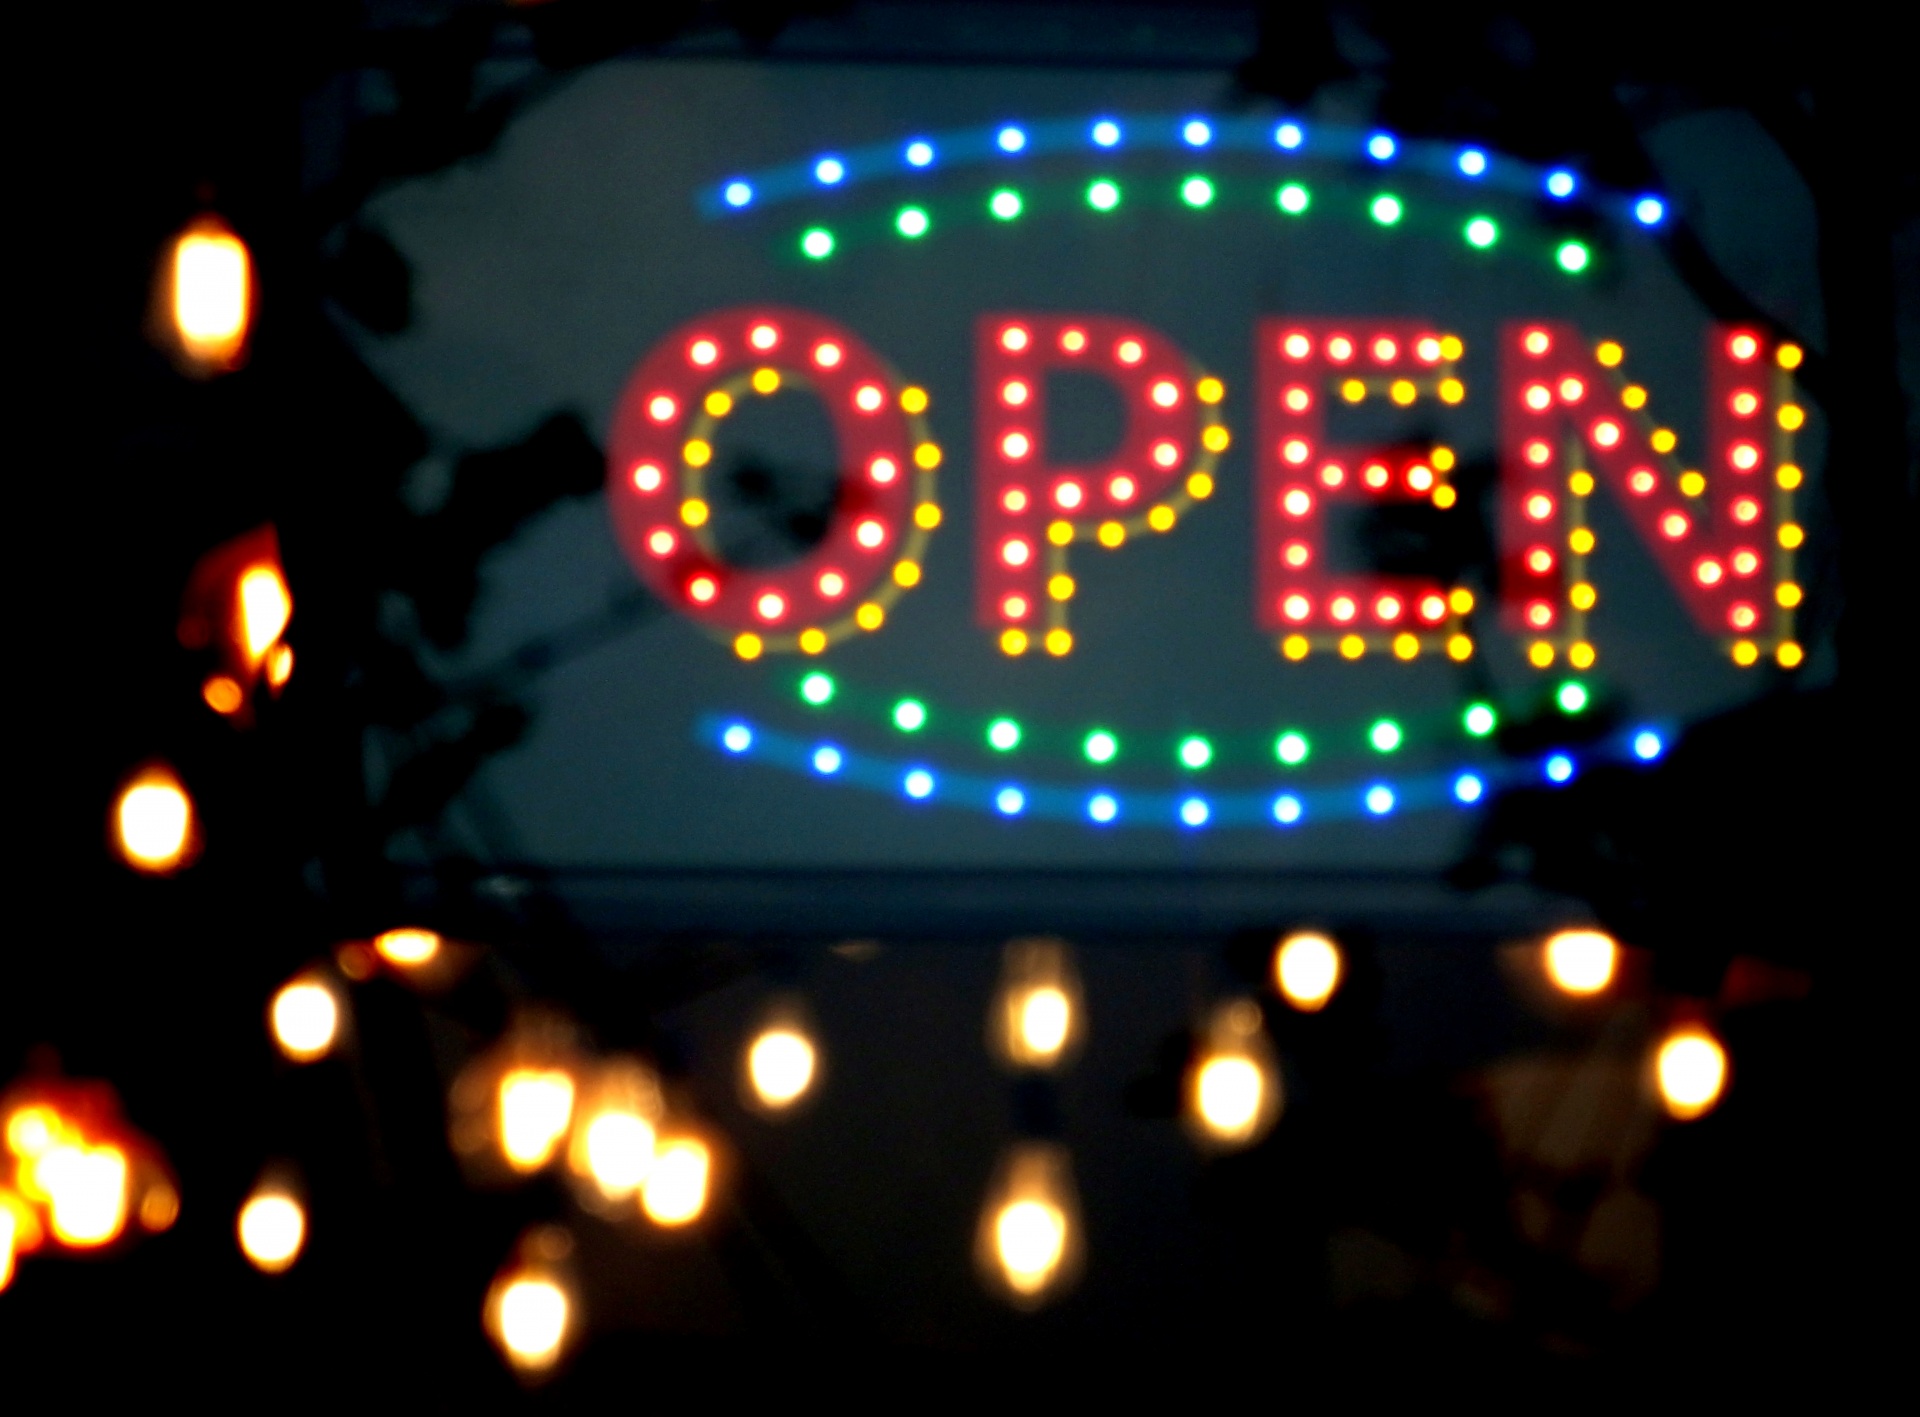 Illuminated Open Shop Sign